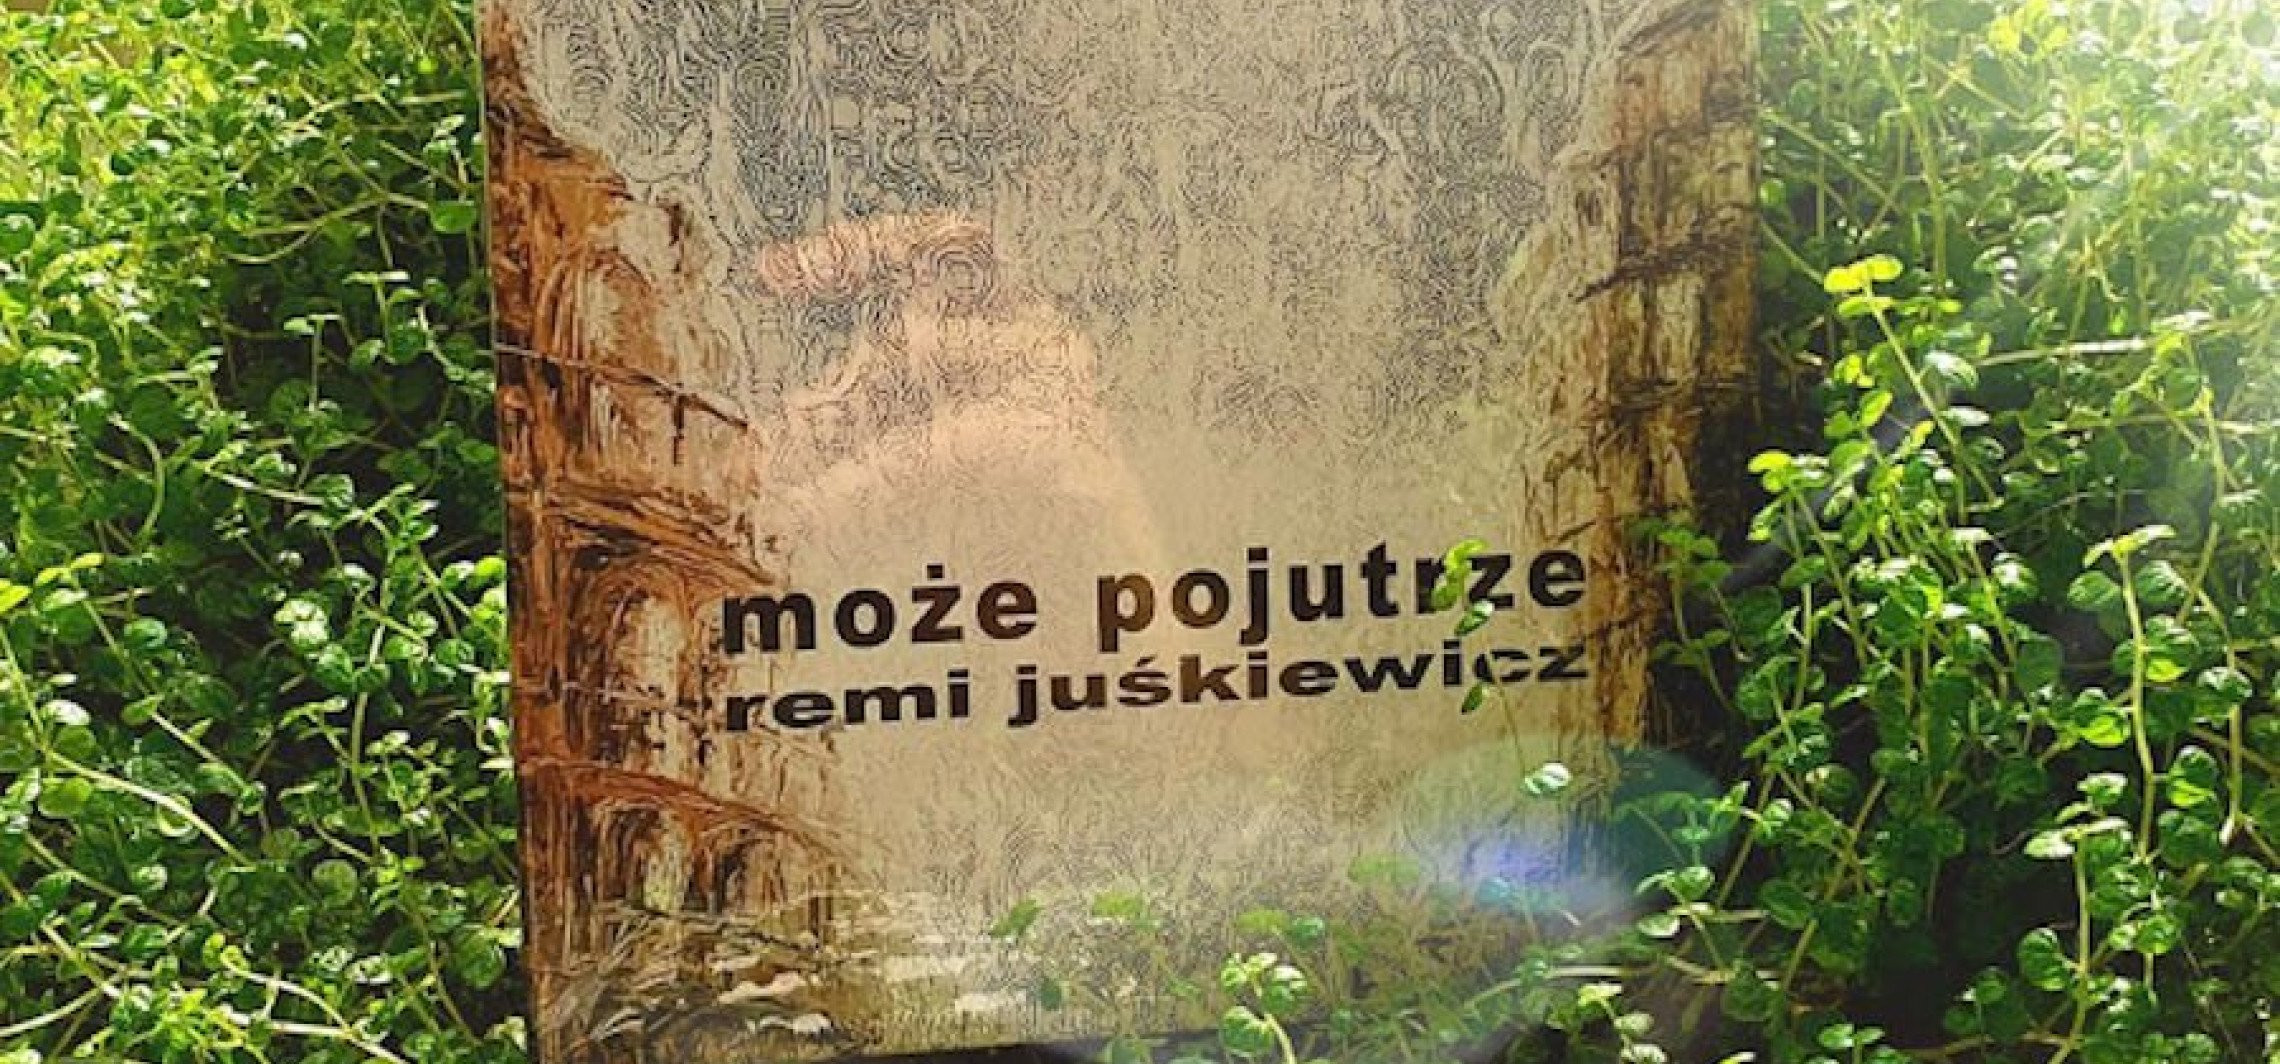 Inowrocław - Pochodzący z Inowrocławia muzyk wydał nową płytę